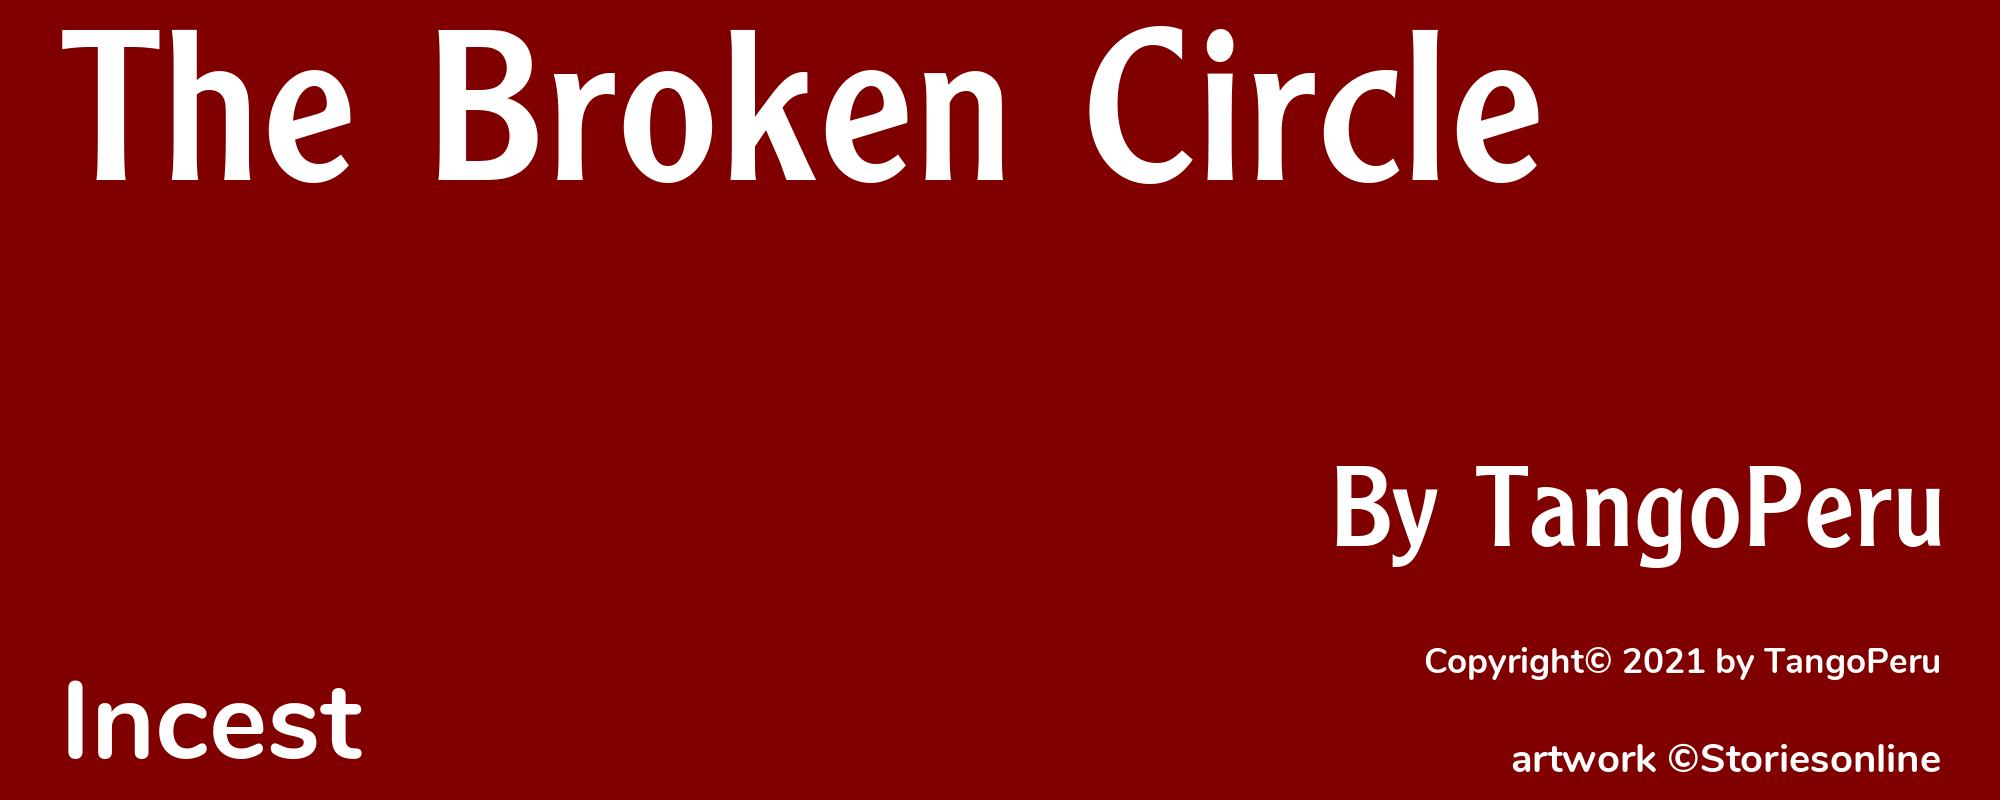 The Broken Circle - Cover